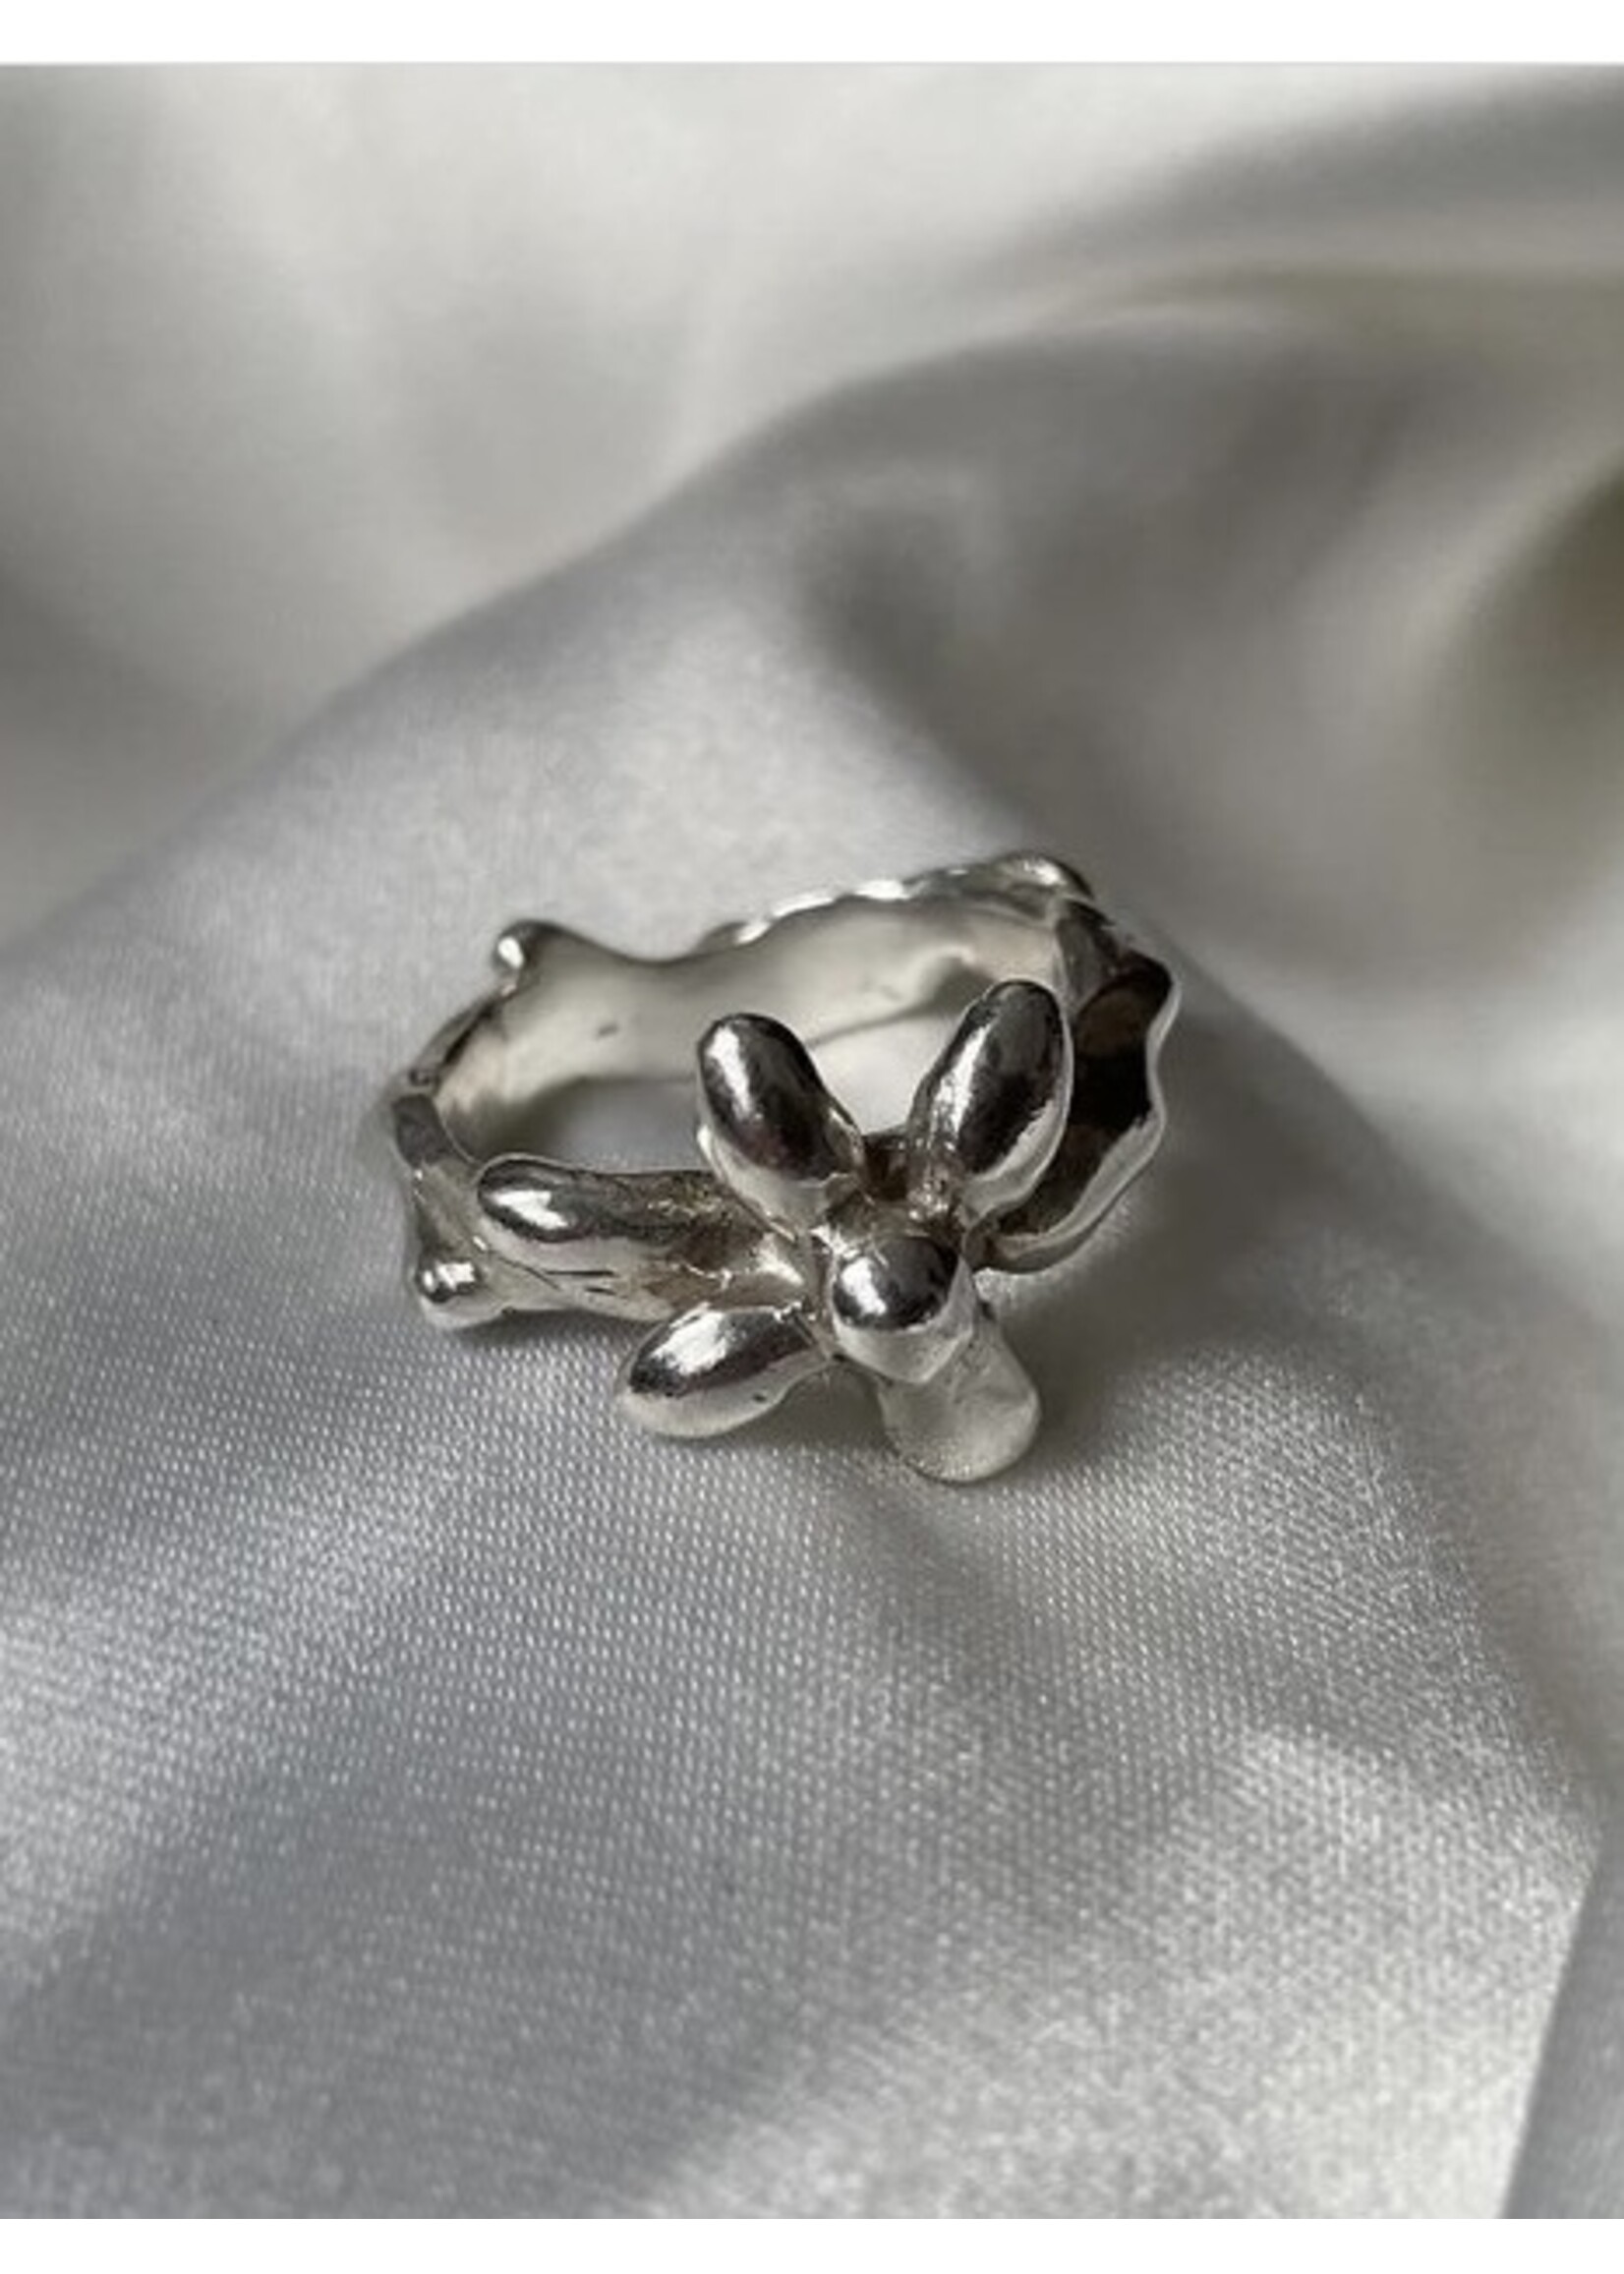 Artawork Sterling silver rings "Gloopy Flower" by ARTAWORK